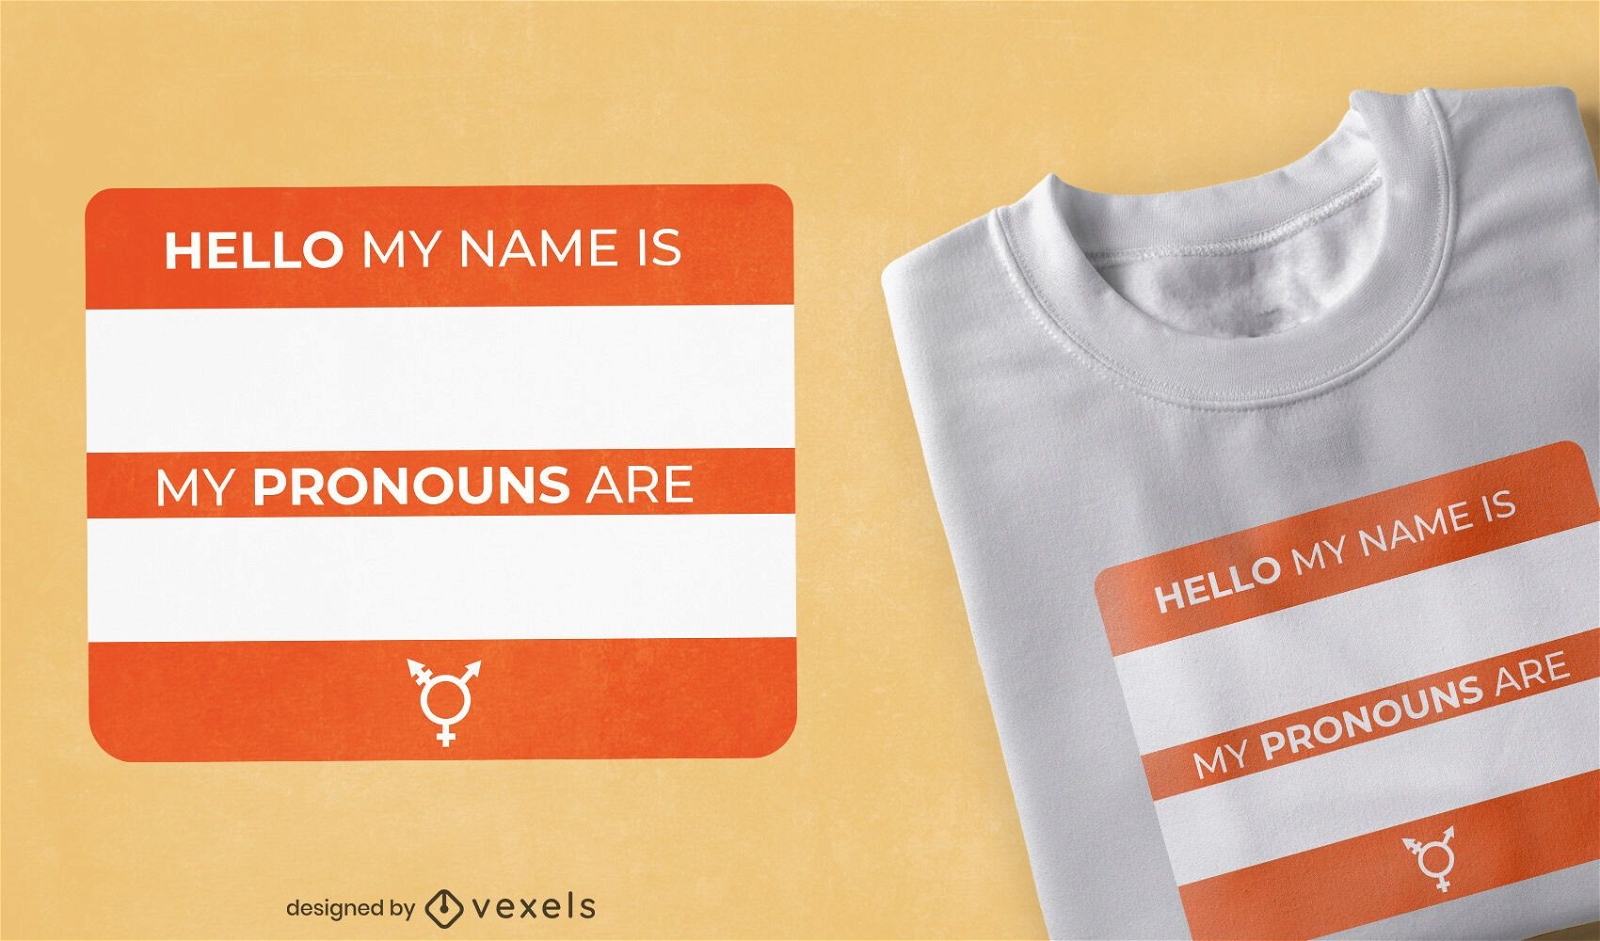 Design de t-shirt da etiqueta de nomes e pronomes